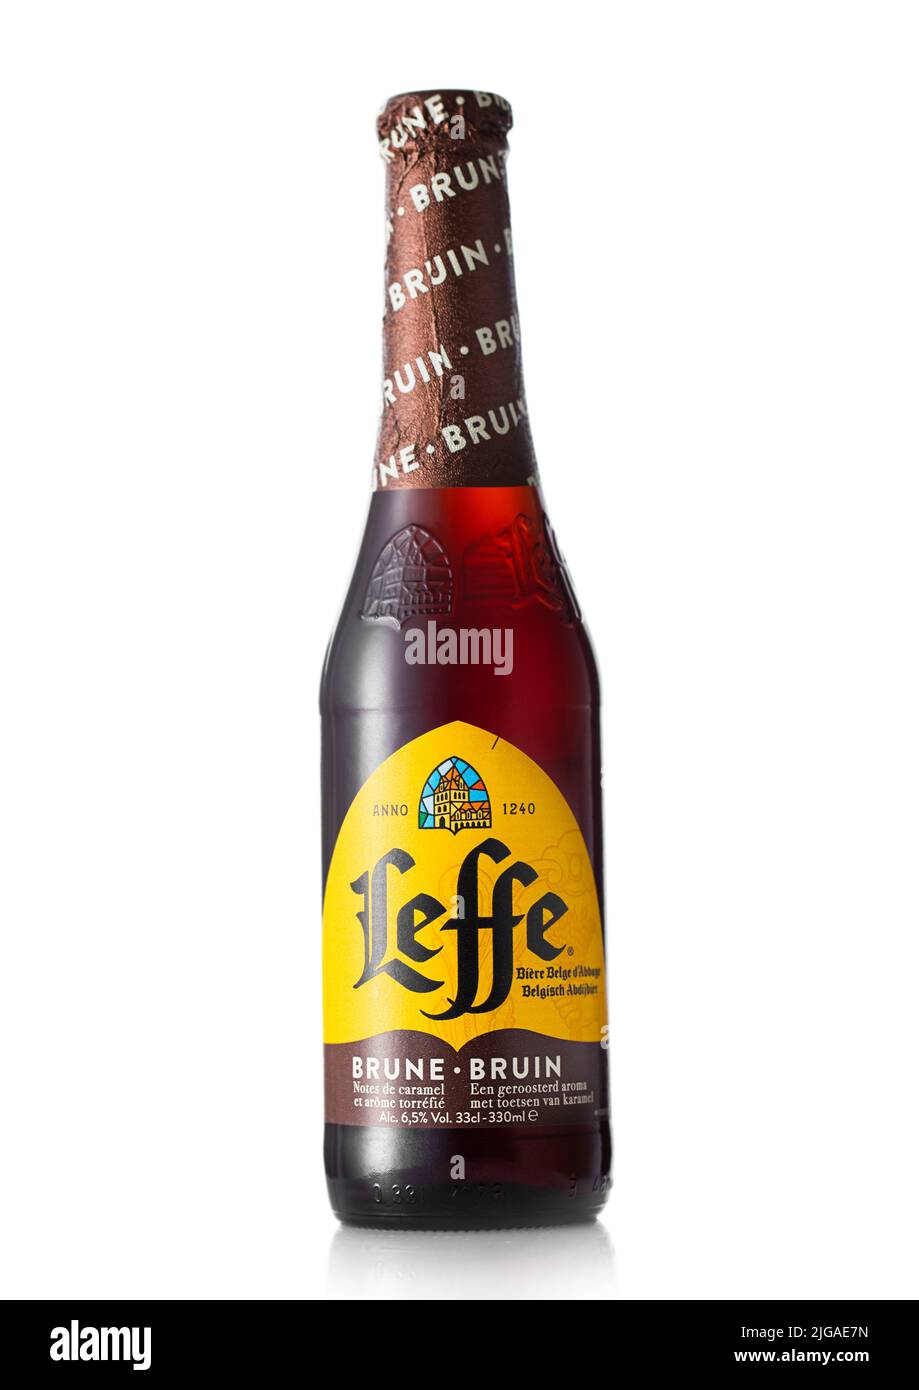 Bière Leffe Ruby : Leffe Ruby en bouteille